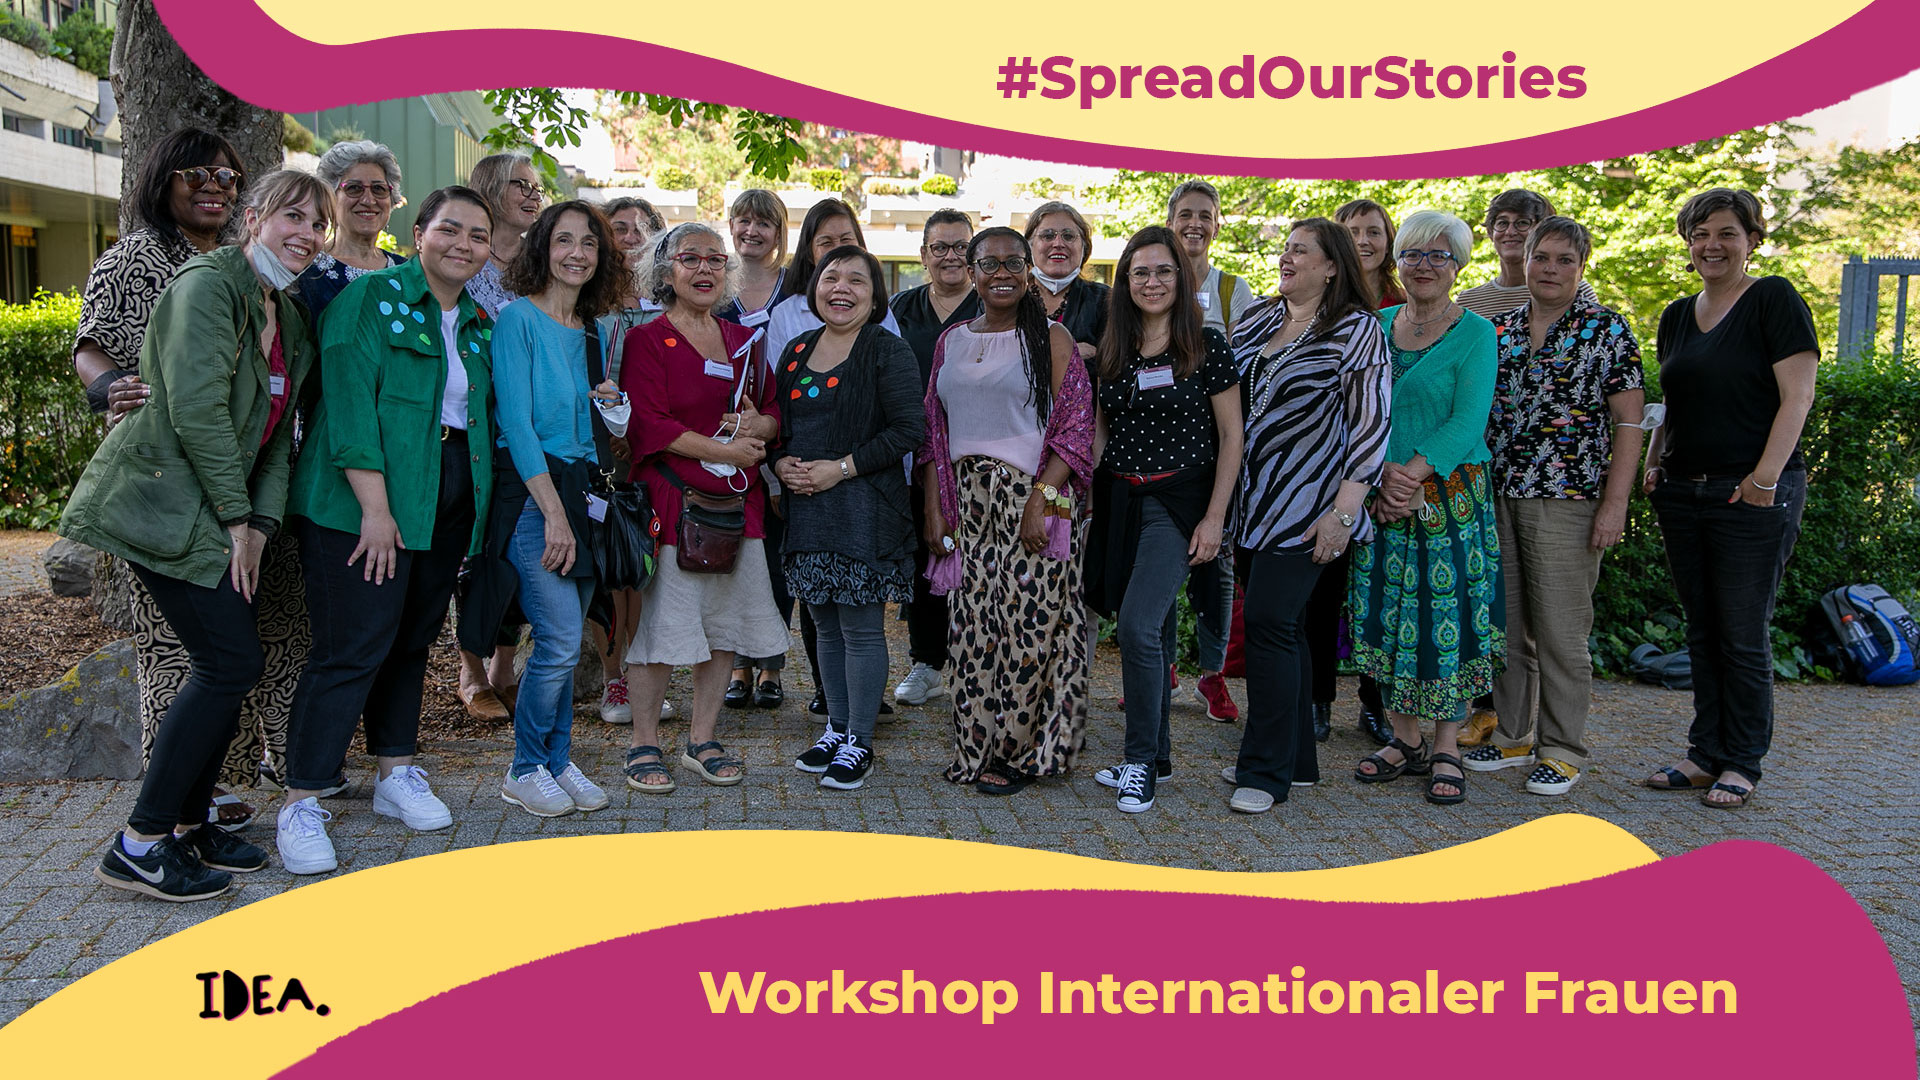 Workshop Internationaler Frauen #spreadourstories